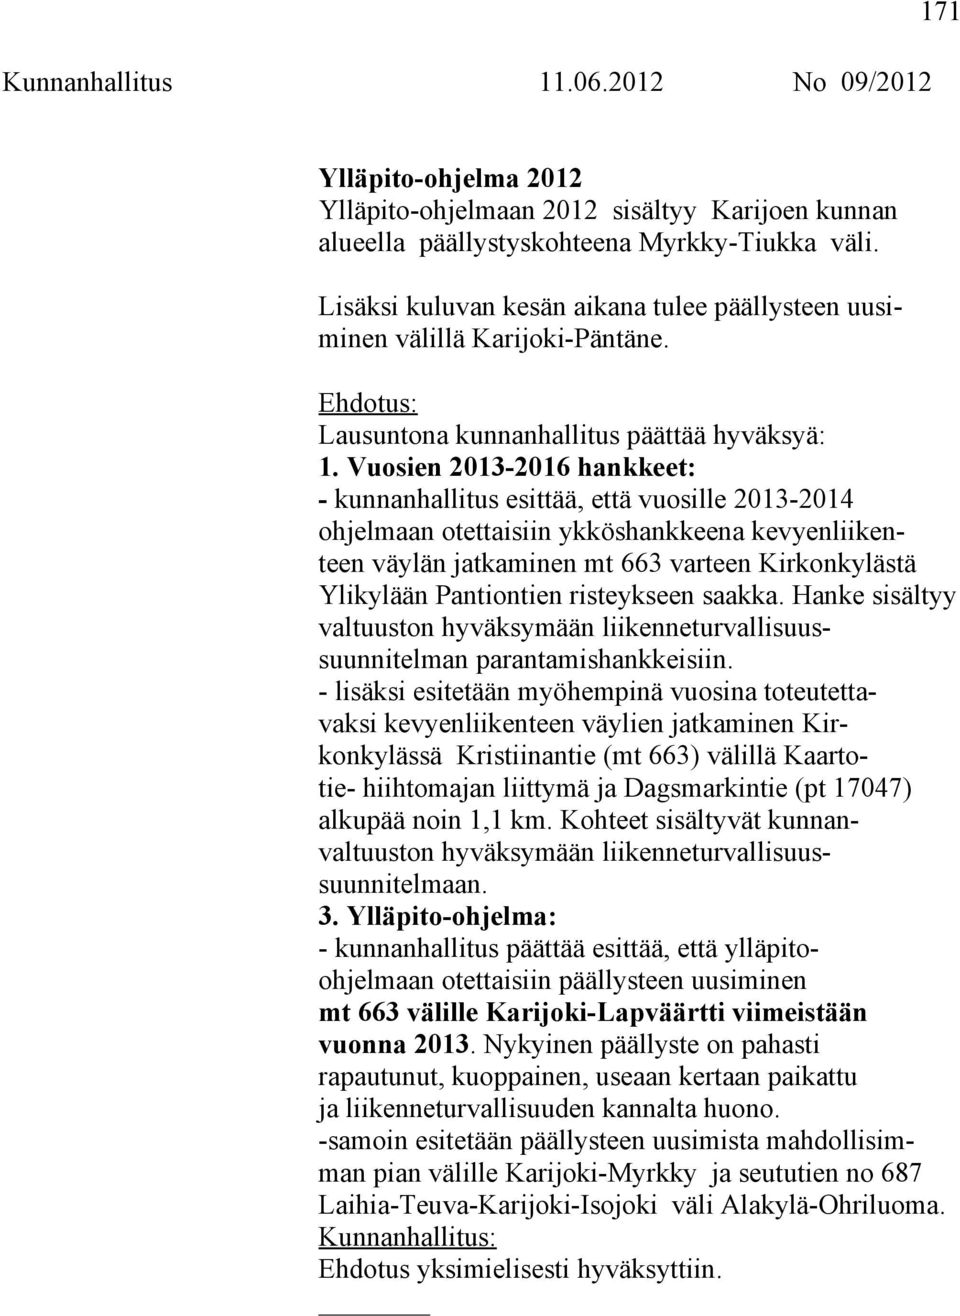 Vuosien 2013-2016 hankkeet: - kunnanhallitus esittää, että vuosille 2013-2014 ohjelmaan otettaisiin ykköshankkeena kevyenliikenteen väylän jatkaminen mt 663 varteen Kirkonkylästä Ylikylään